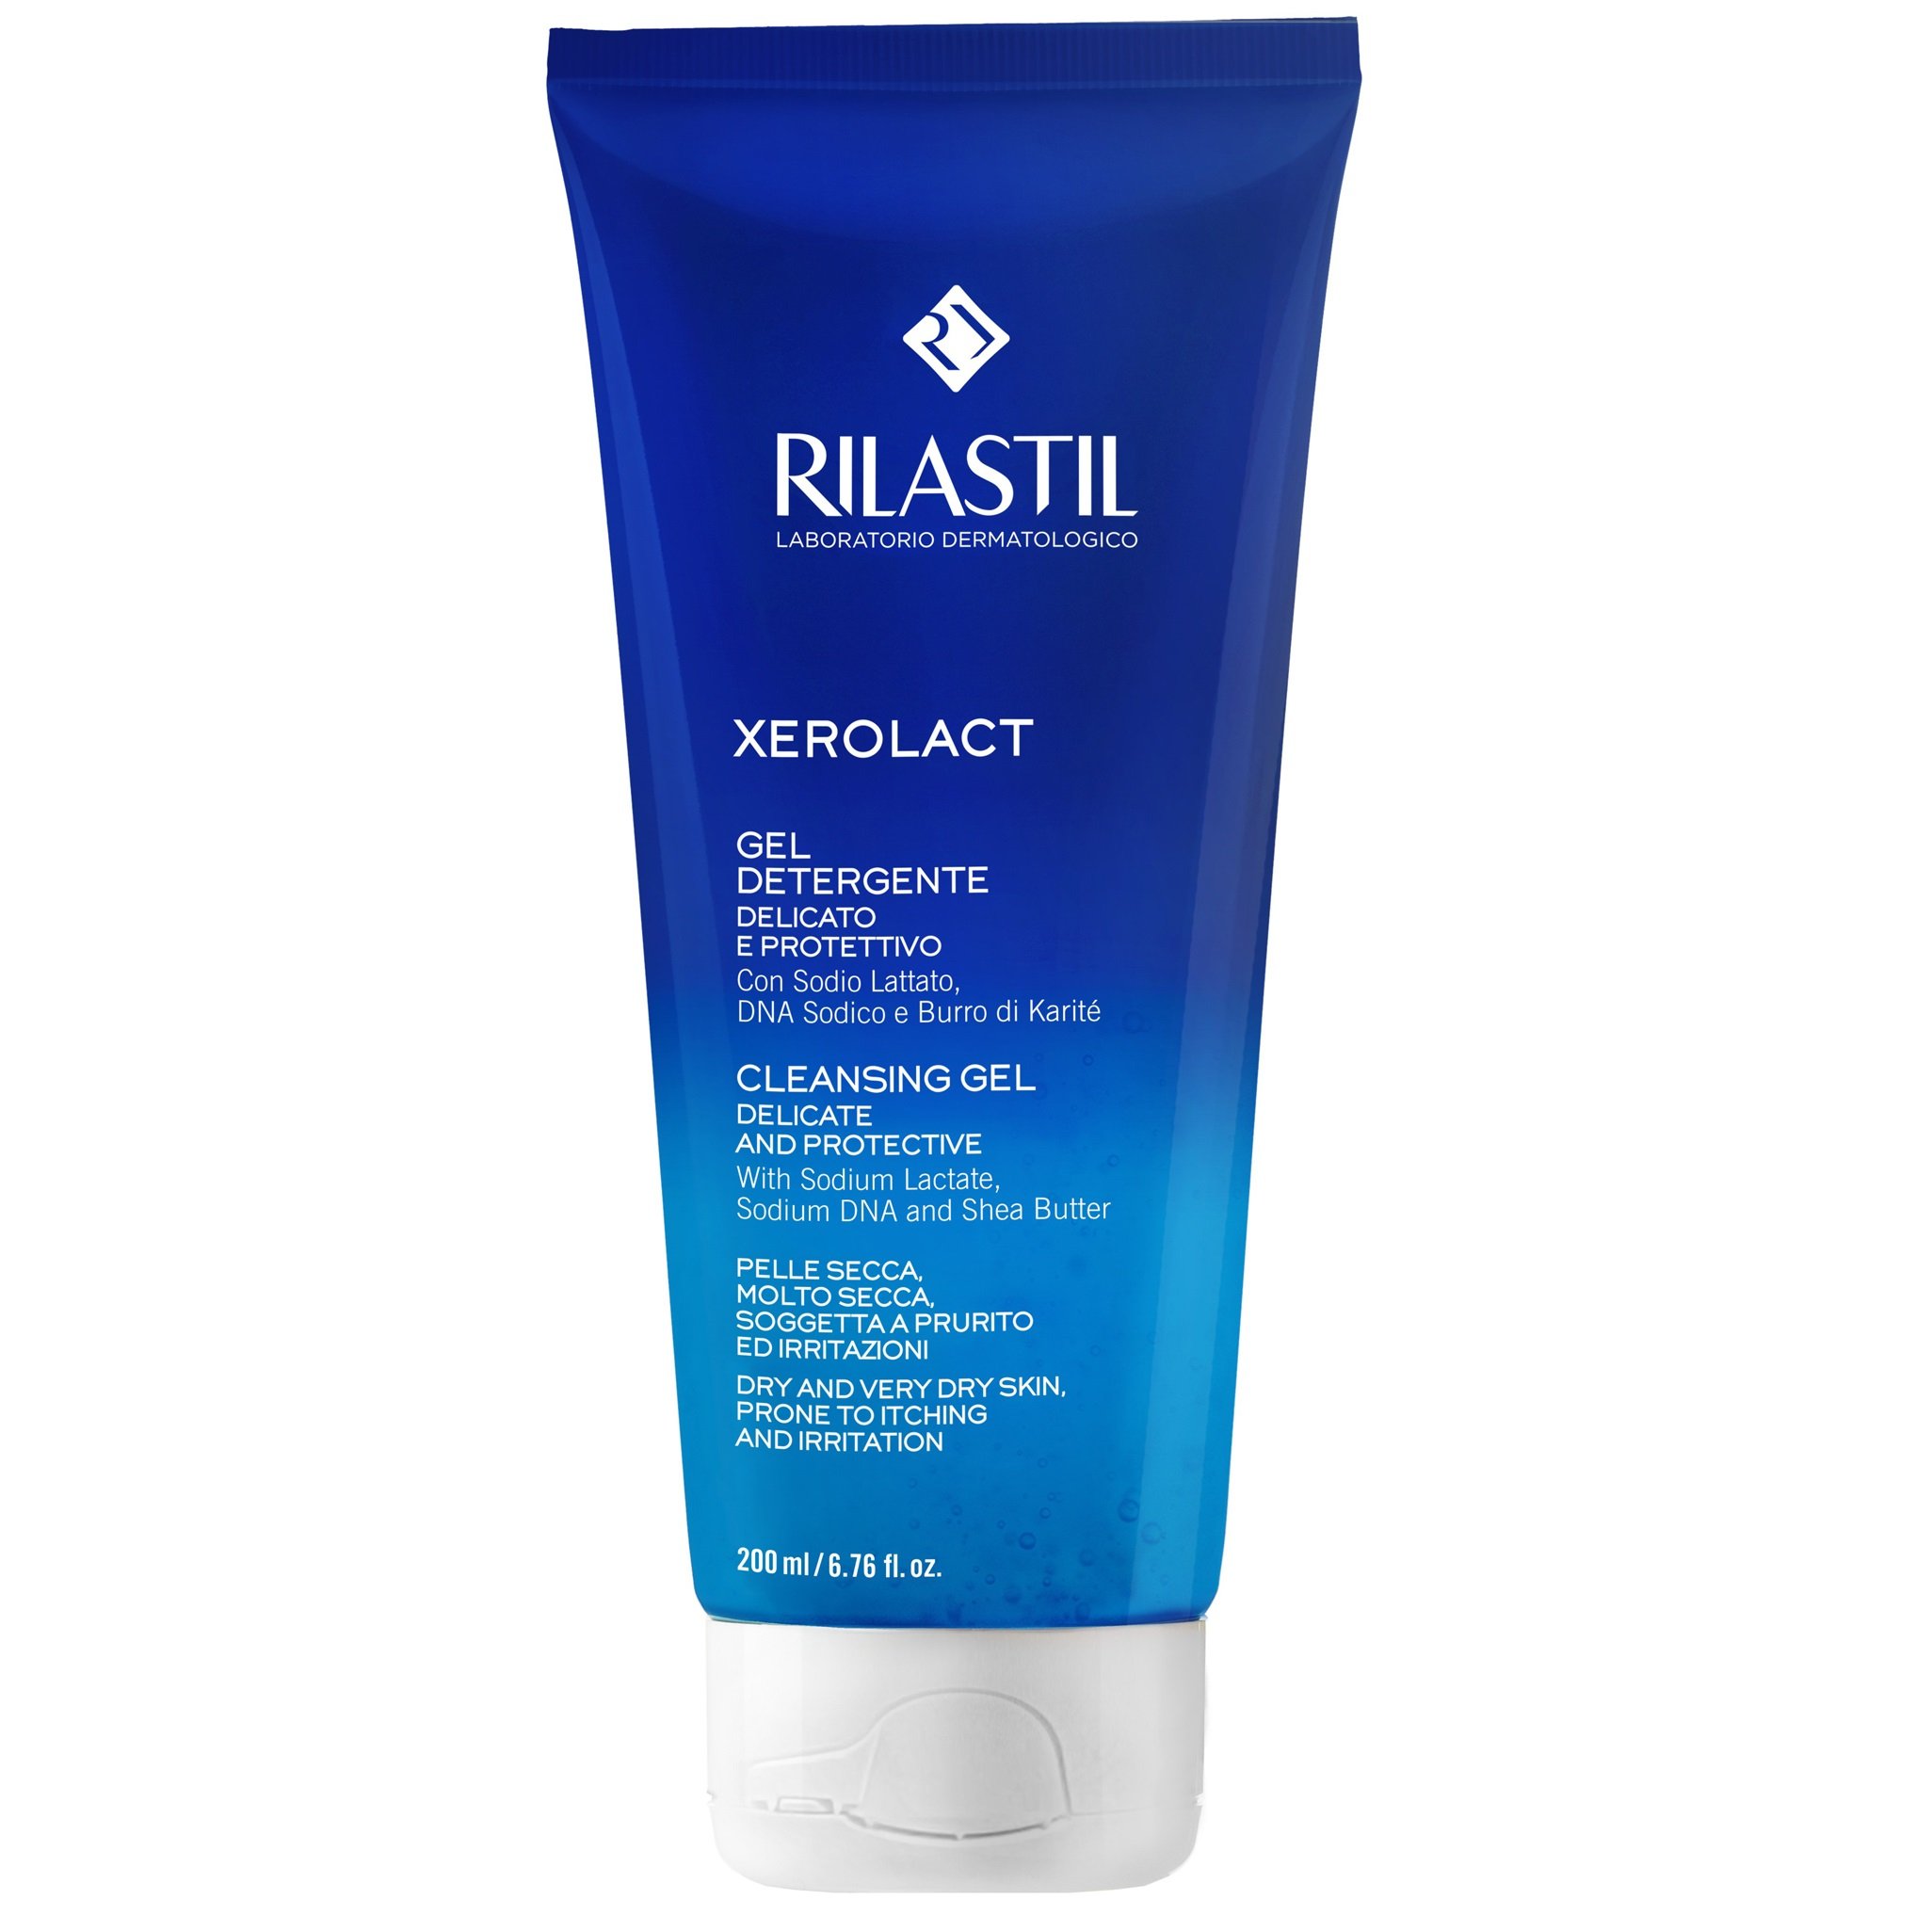 Гель для делікатного очищення шкіри Rilastil Xerolact, 200 мл - фото 1